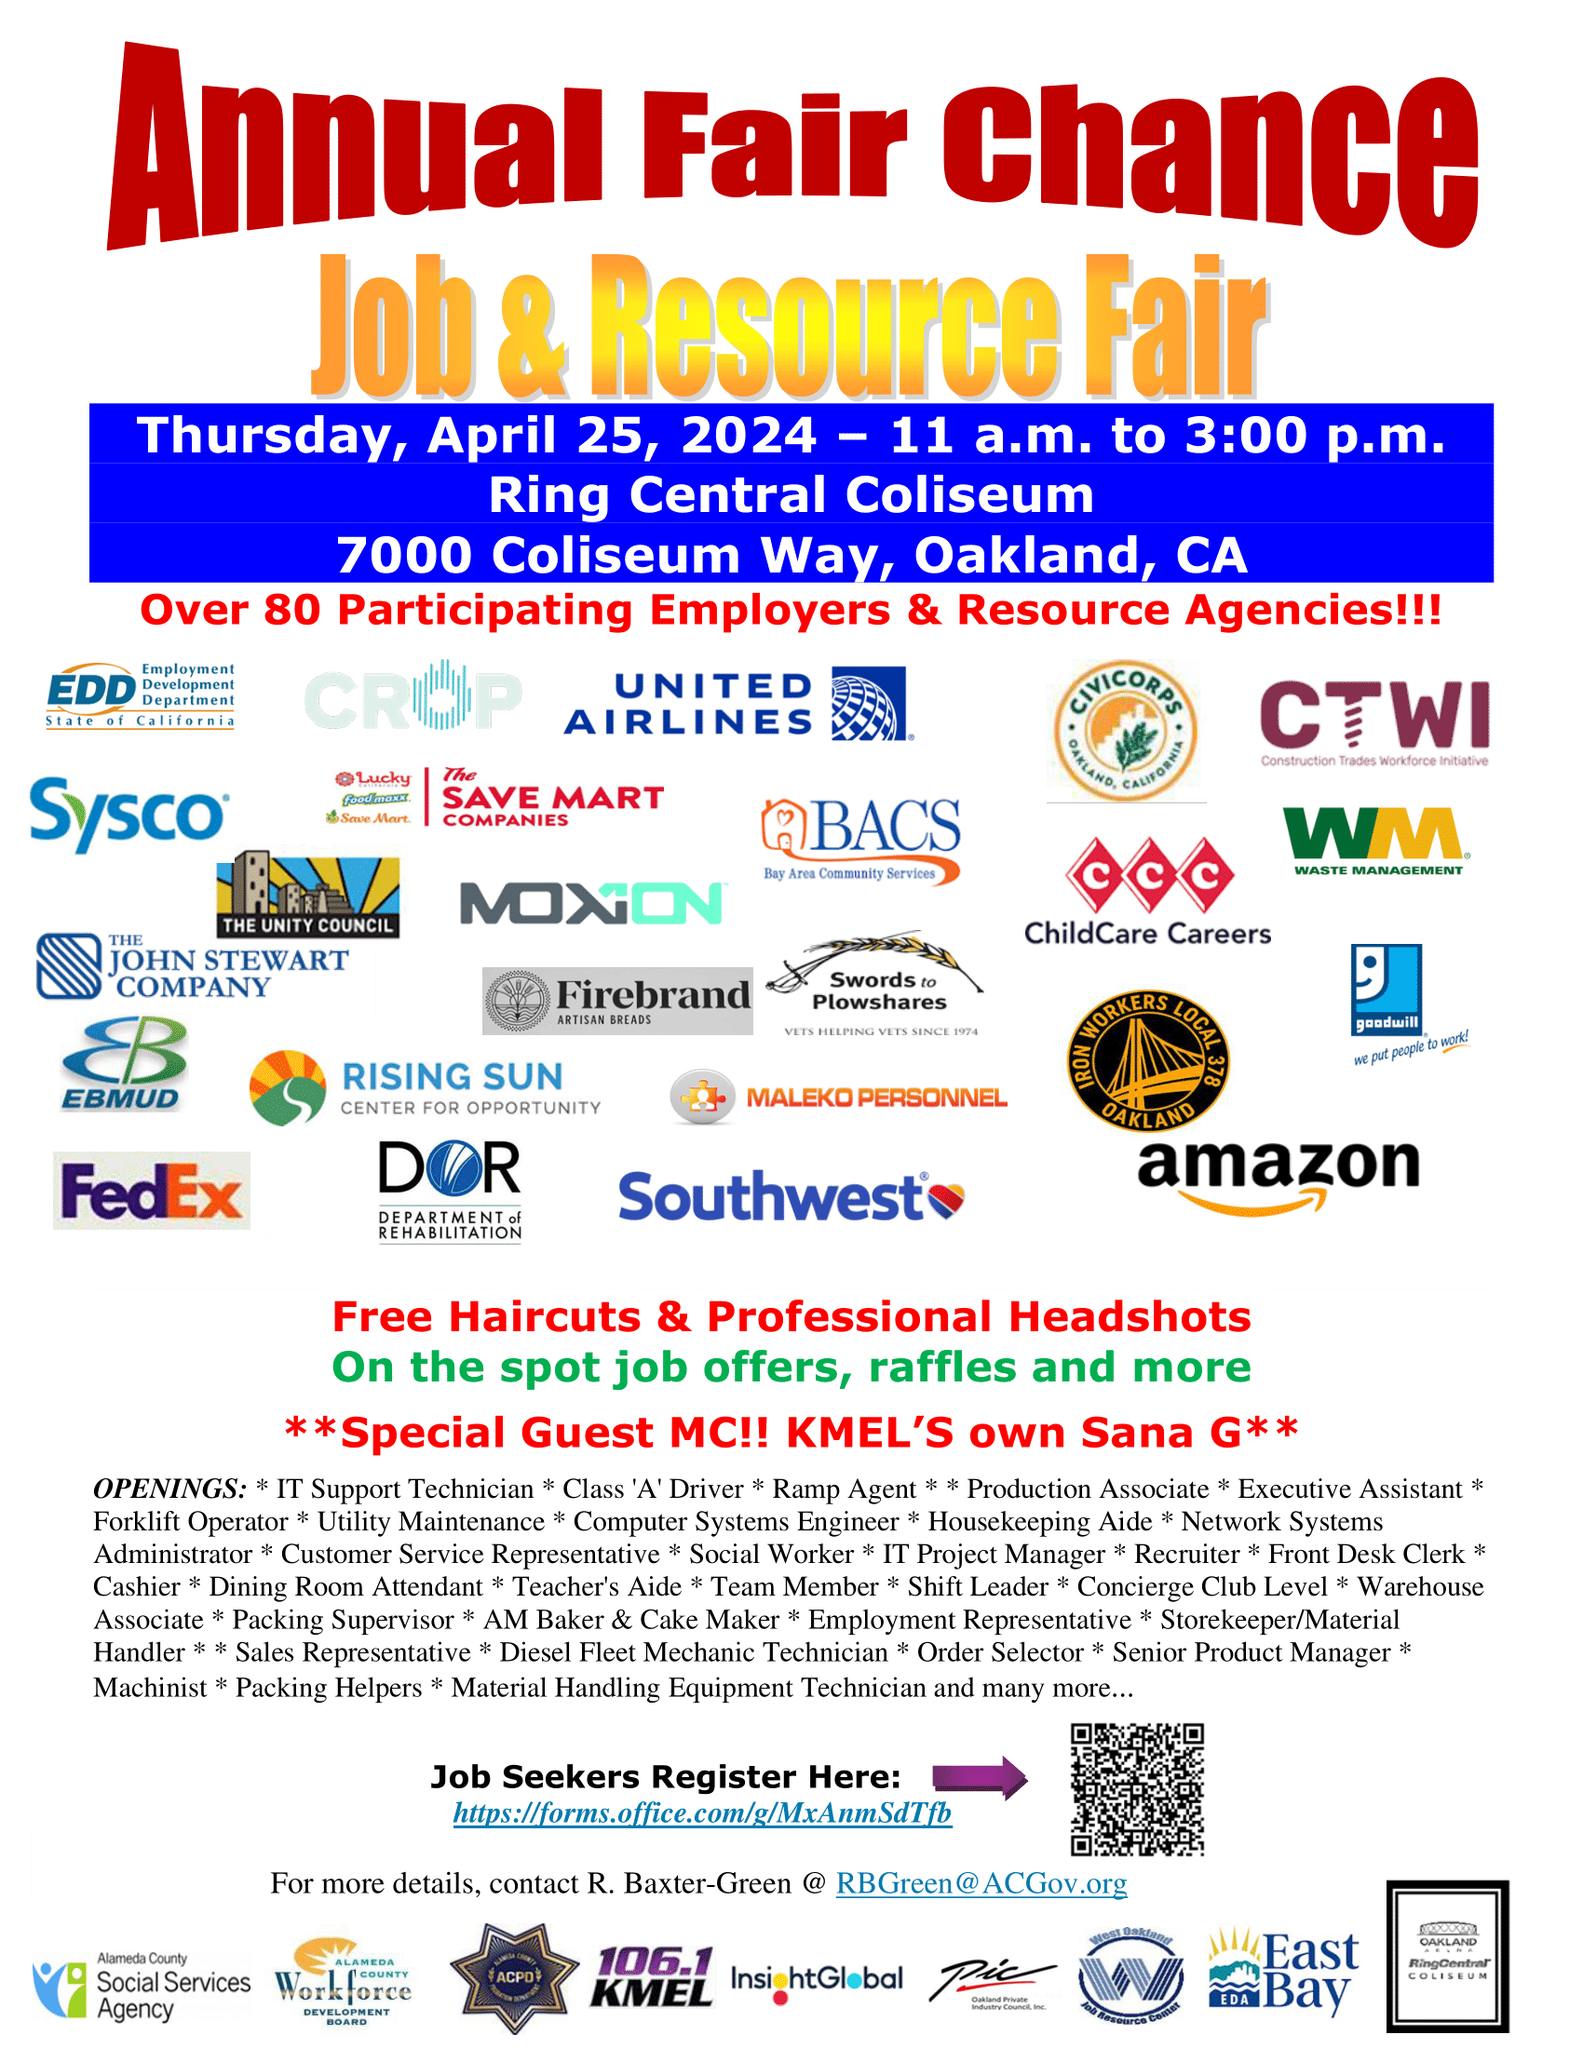 Annual Fair Chance Job & Resource Fair - Oakland, CA - April 25, 2024